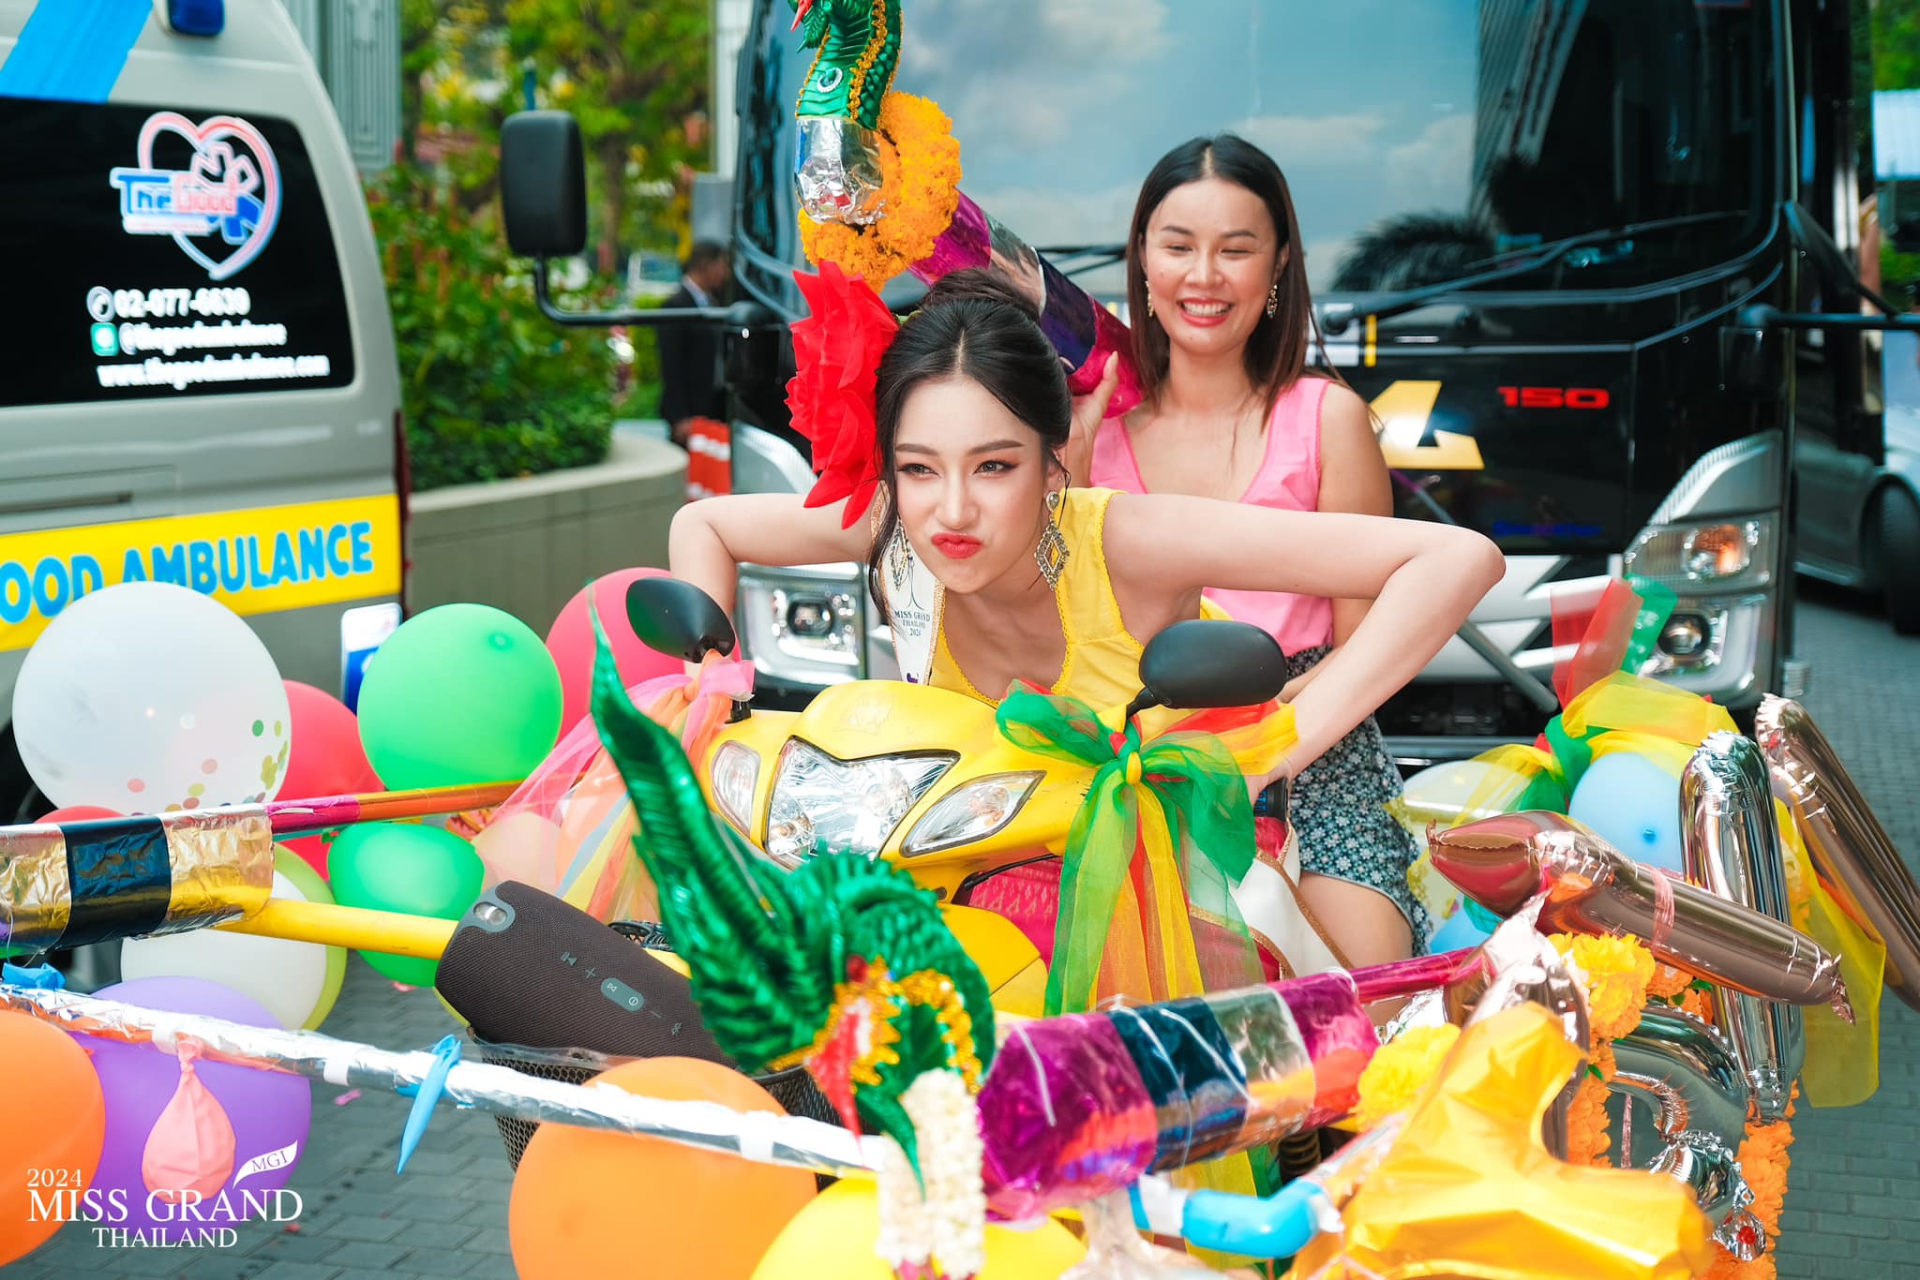 Thí sinh thi hoa hậu đi xe cứu thương đến địa điểm thi khiến netizen tranh cãi: Độc lạ hay lố lăng? - ảnh 6